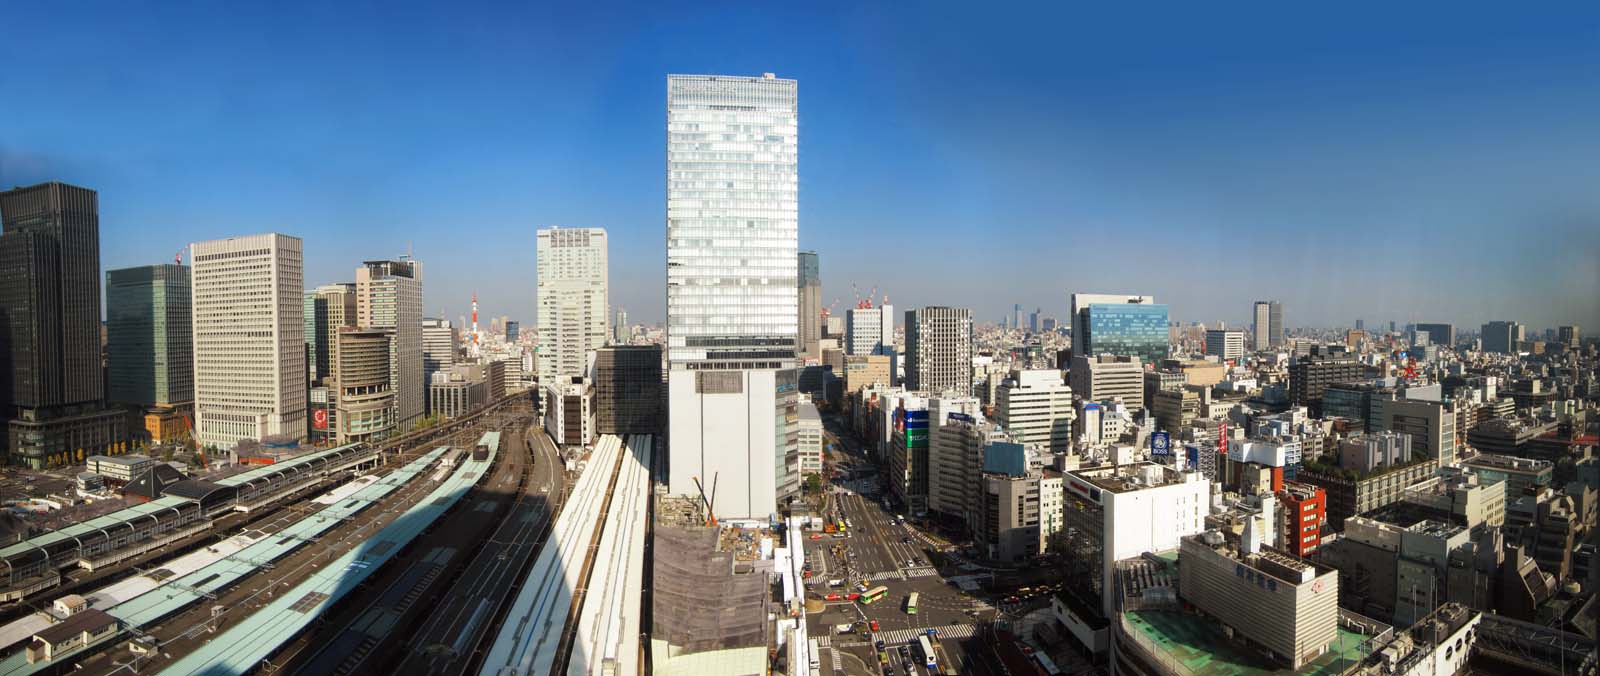 fotografia, material, livra, ajardine, imagine, proveja fotografia,Panorama de Tquio, Grupo construindo, plataforma, Estao de Tquio, Novo desenvolvimento